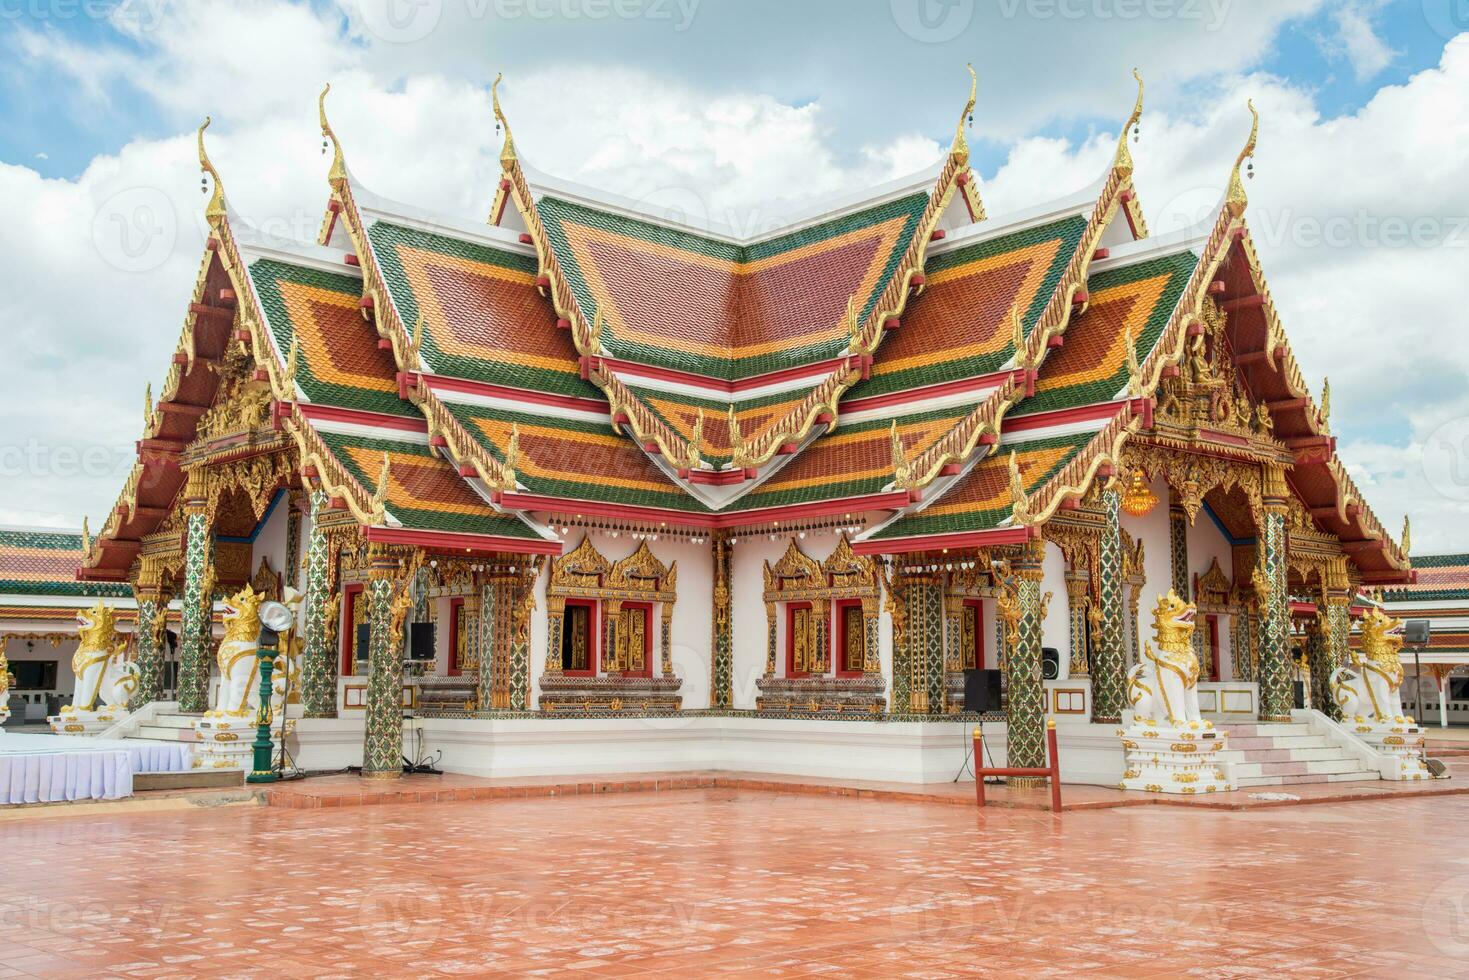 phra dat choeng maatje tempel is een majoor en heilig religieus monument van Sakon Nakhon provincie van Thailand. foto